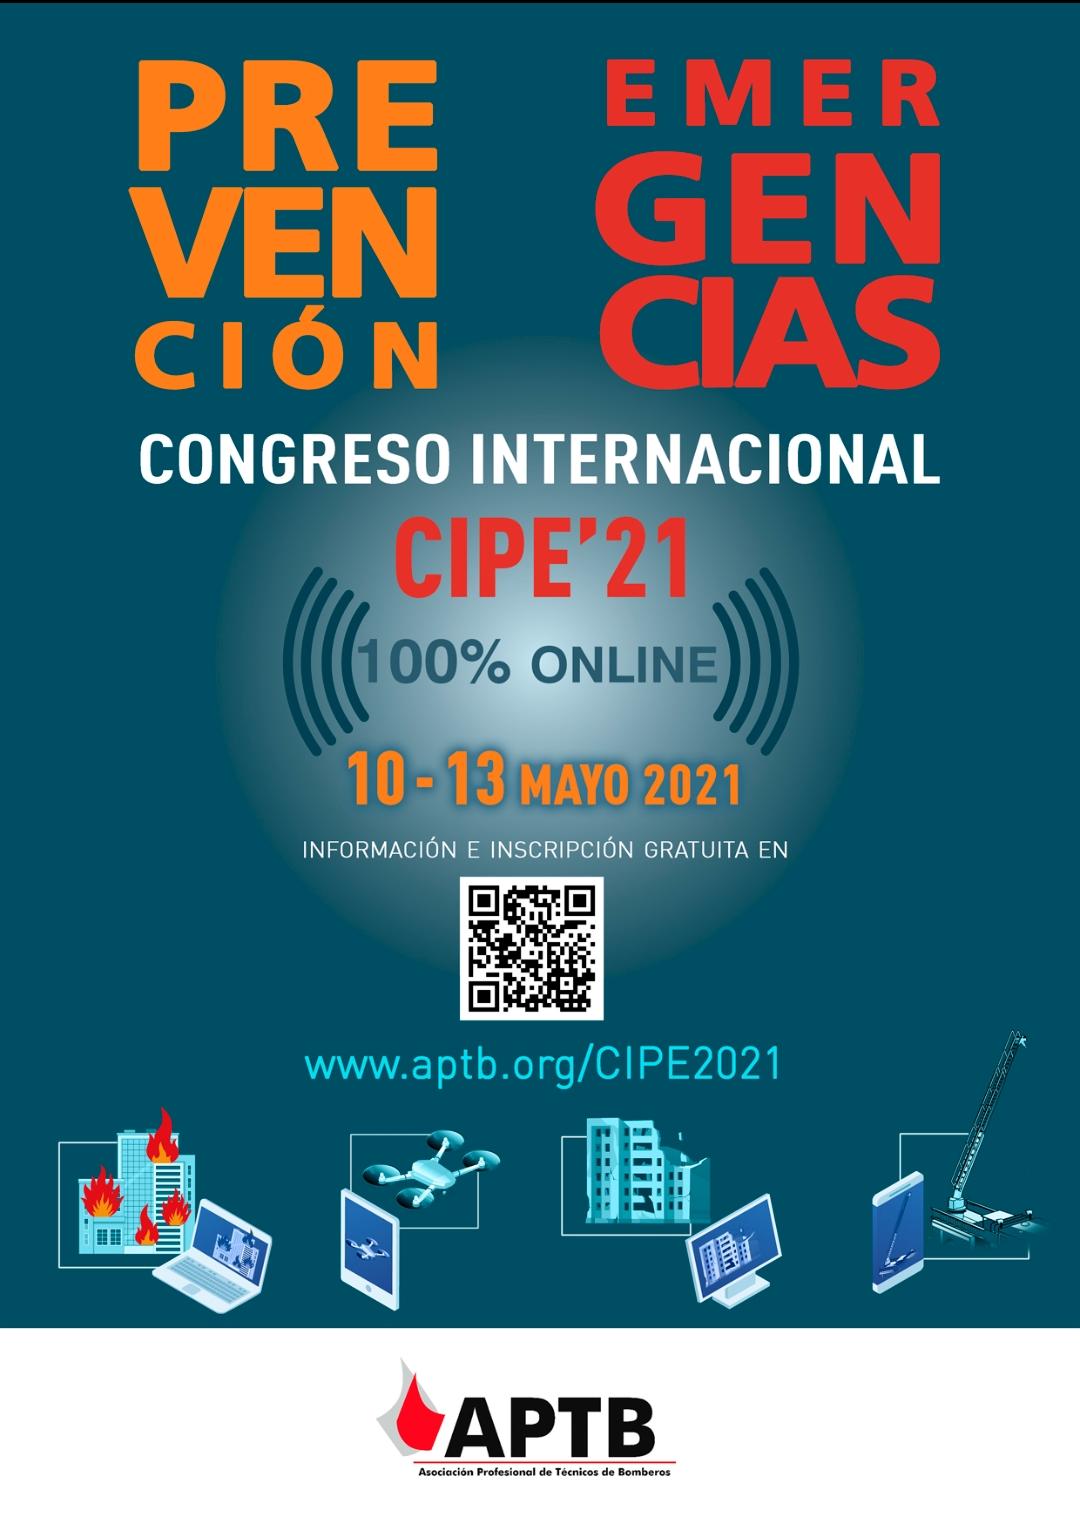 APTB OFRECE INSCRIPCIÓN GRATUITA EN #CIPE21Emergencias #CongresoEmergencias21 PARA TODOS LOS ASISTENTES